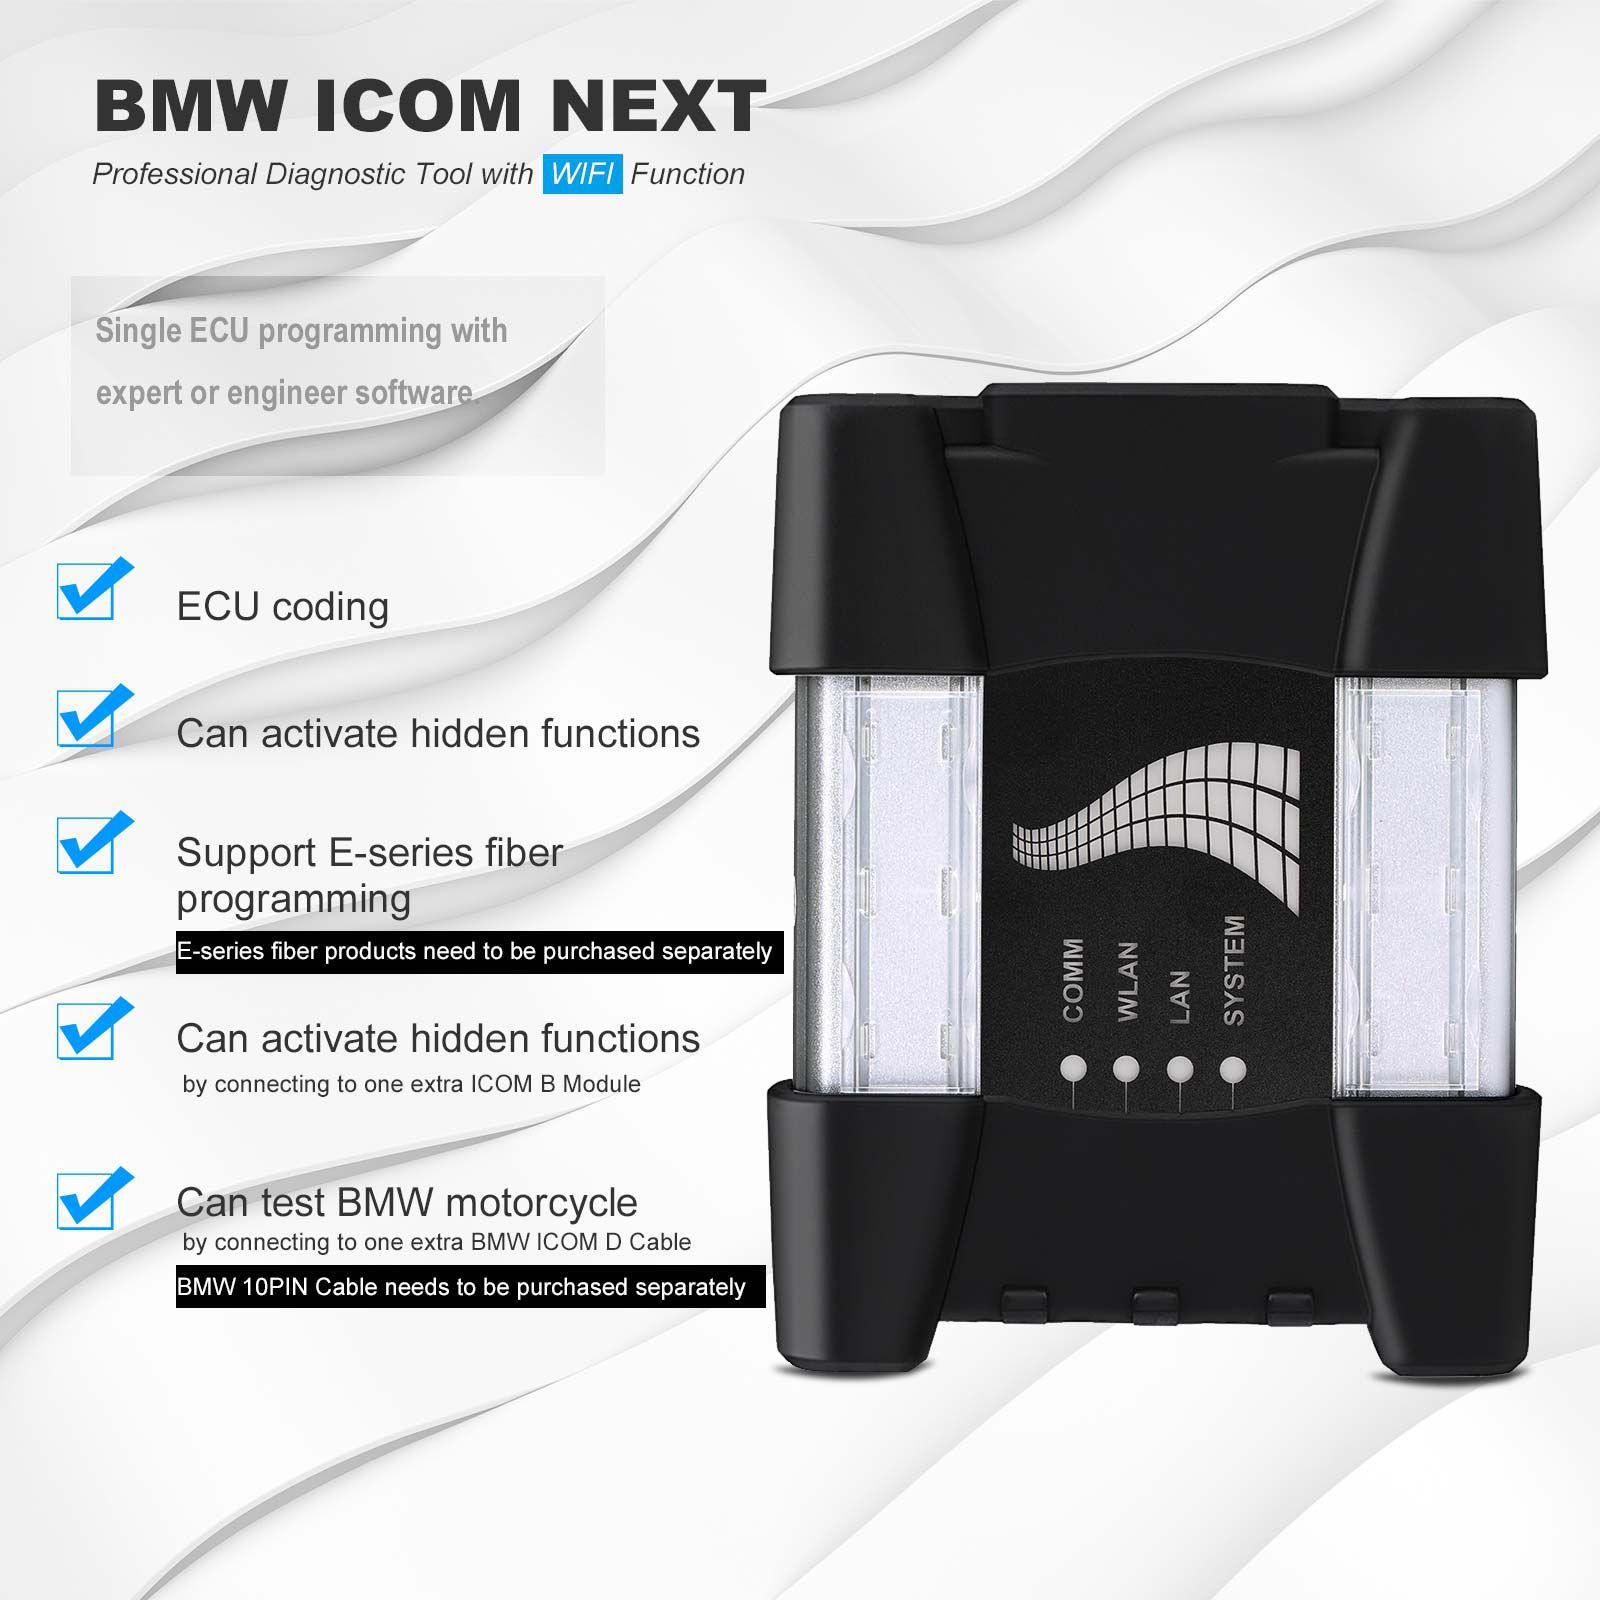 Herramienta de diagnóstico profesional BMW ICOM next con función wifi